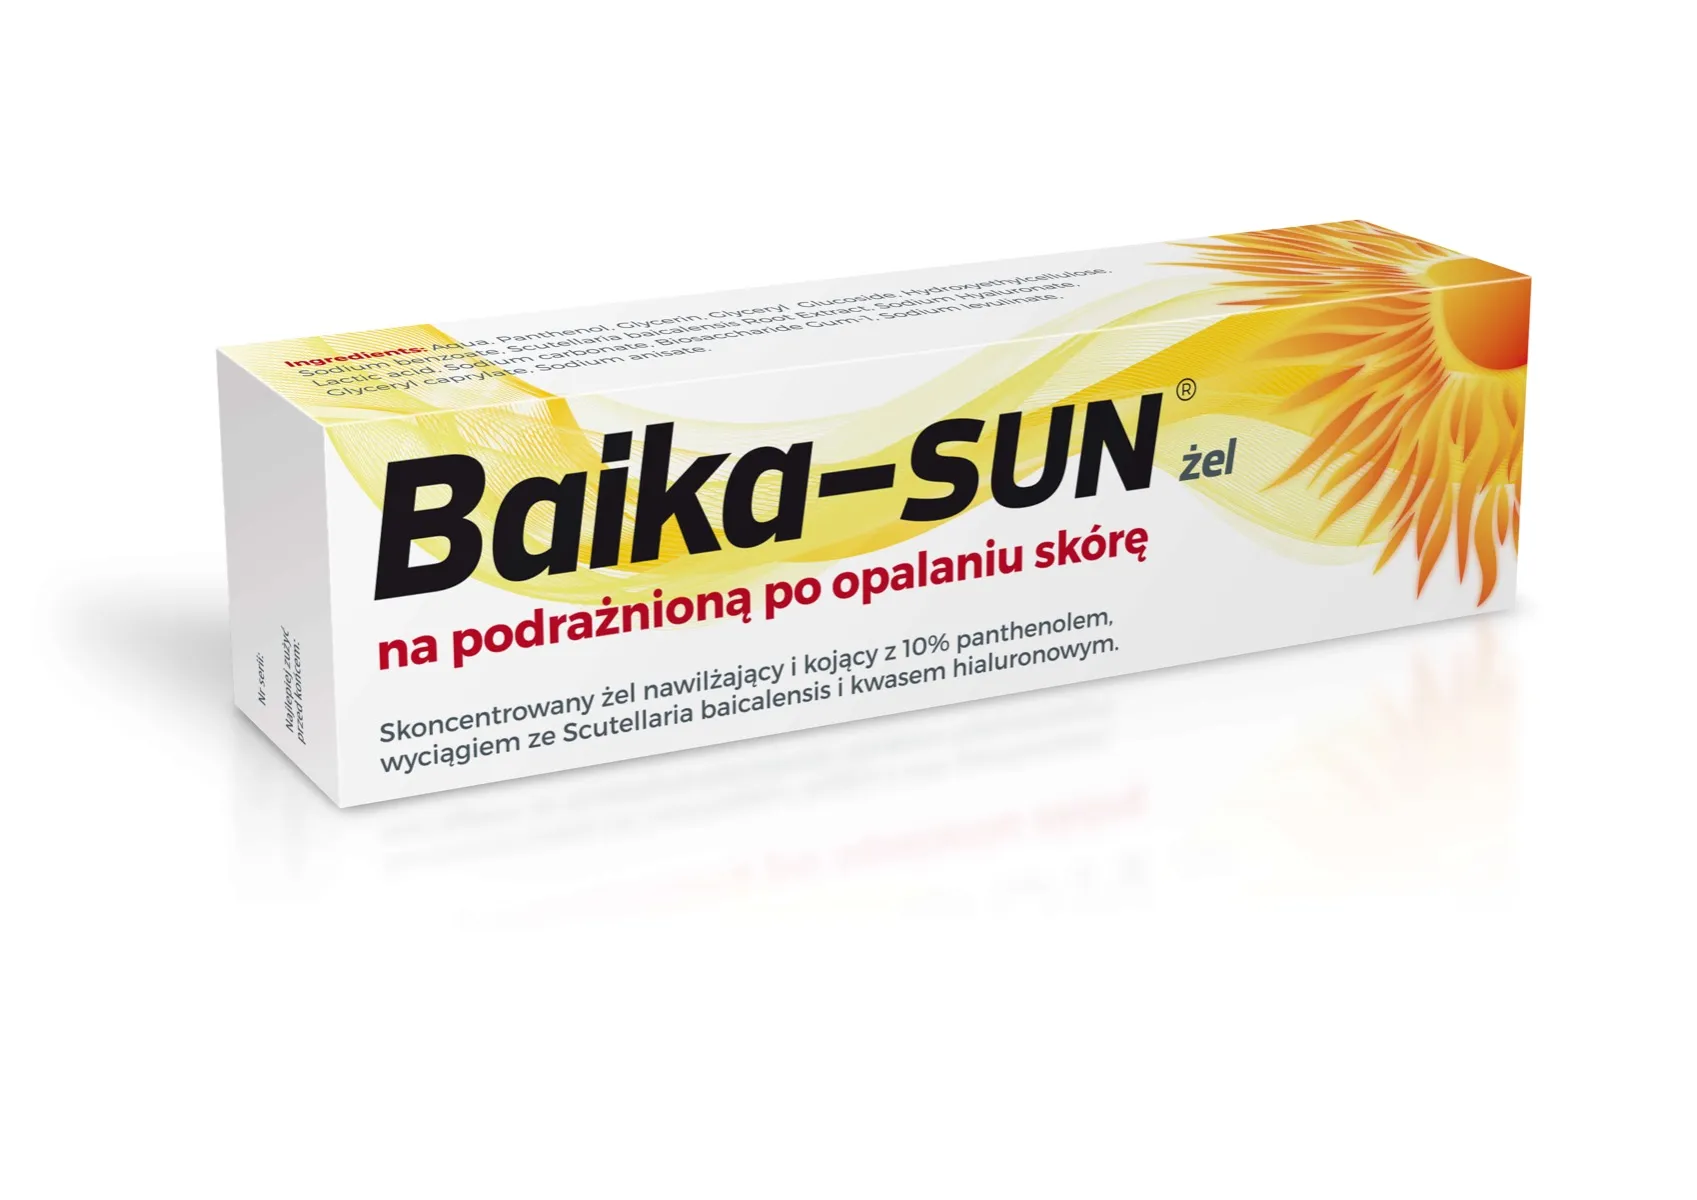 Baika- SUN, żel, 40 g